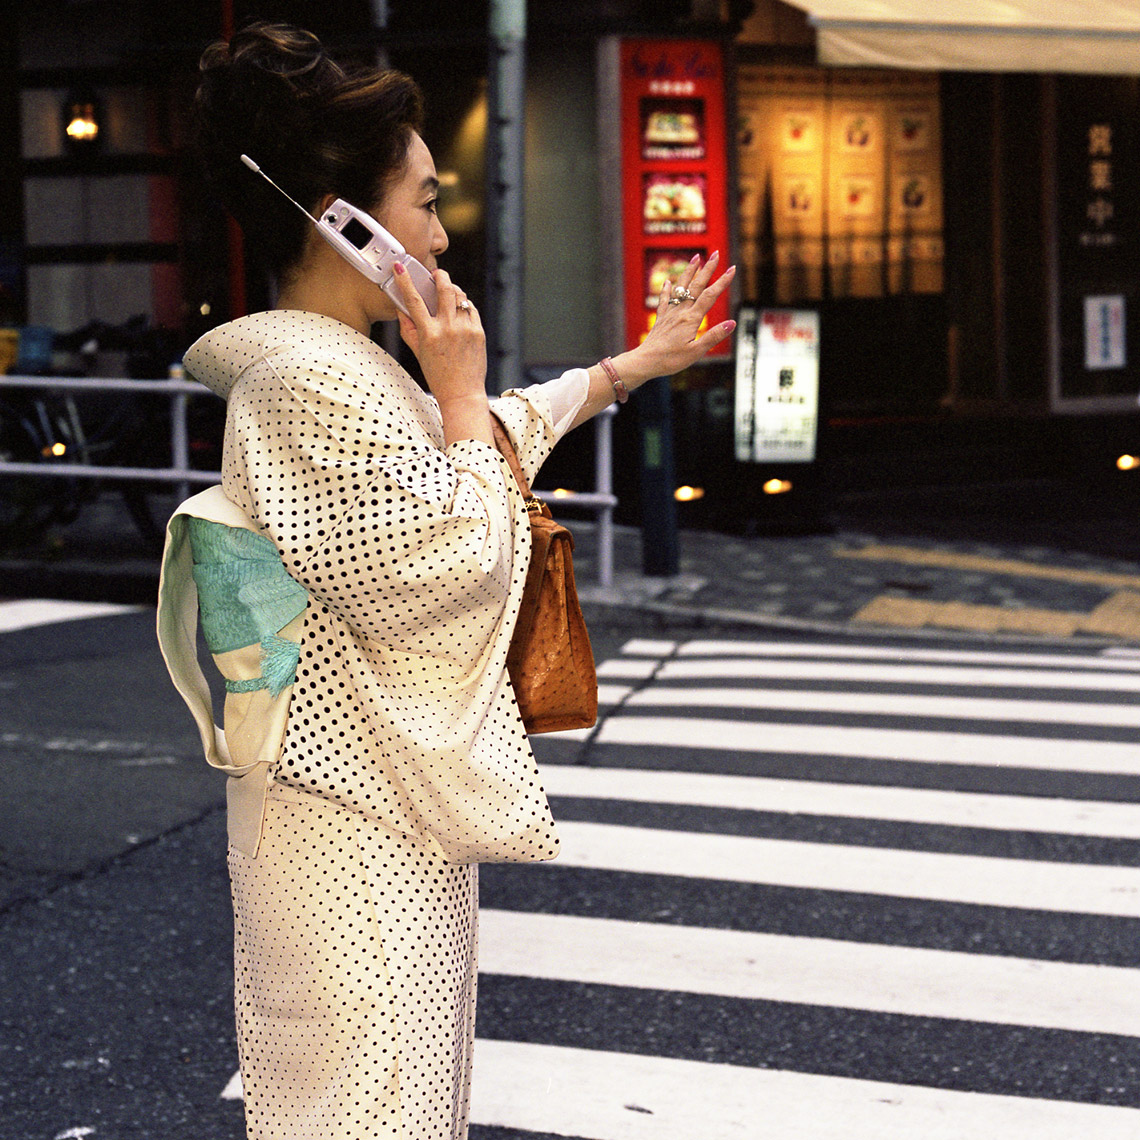 Kimono Taxi call